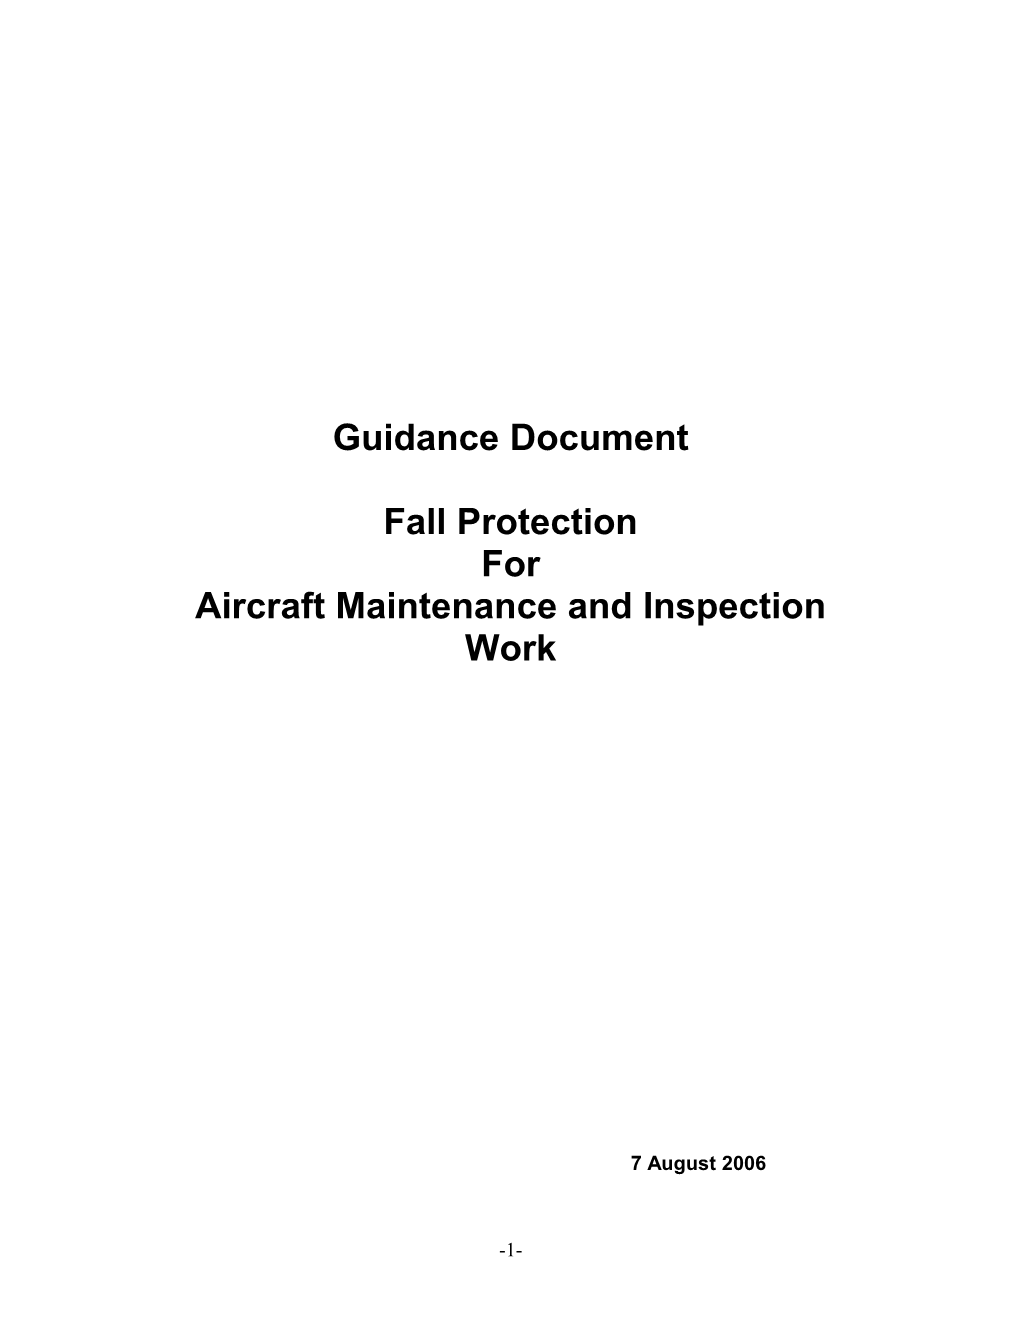 FP Guidance Aircraft Maintenance